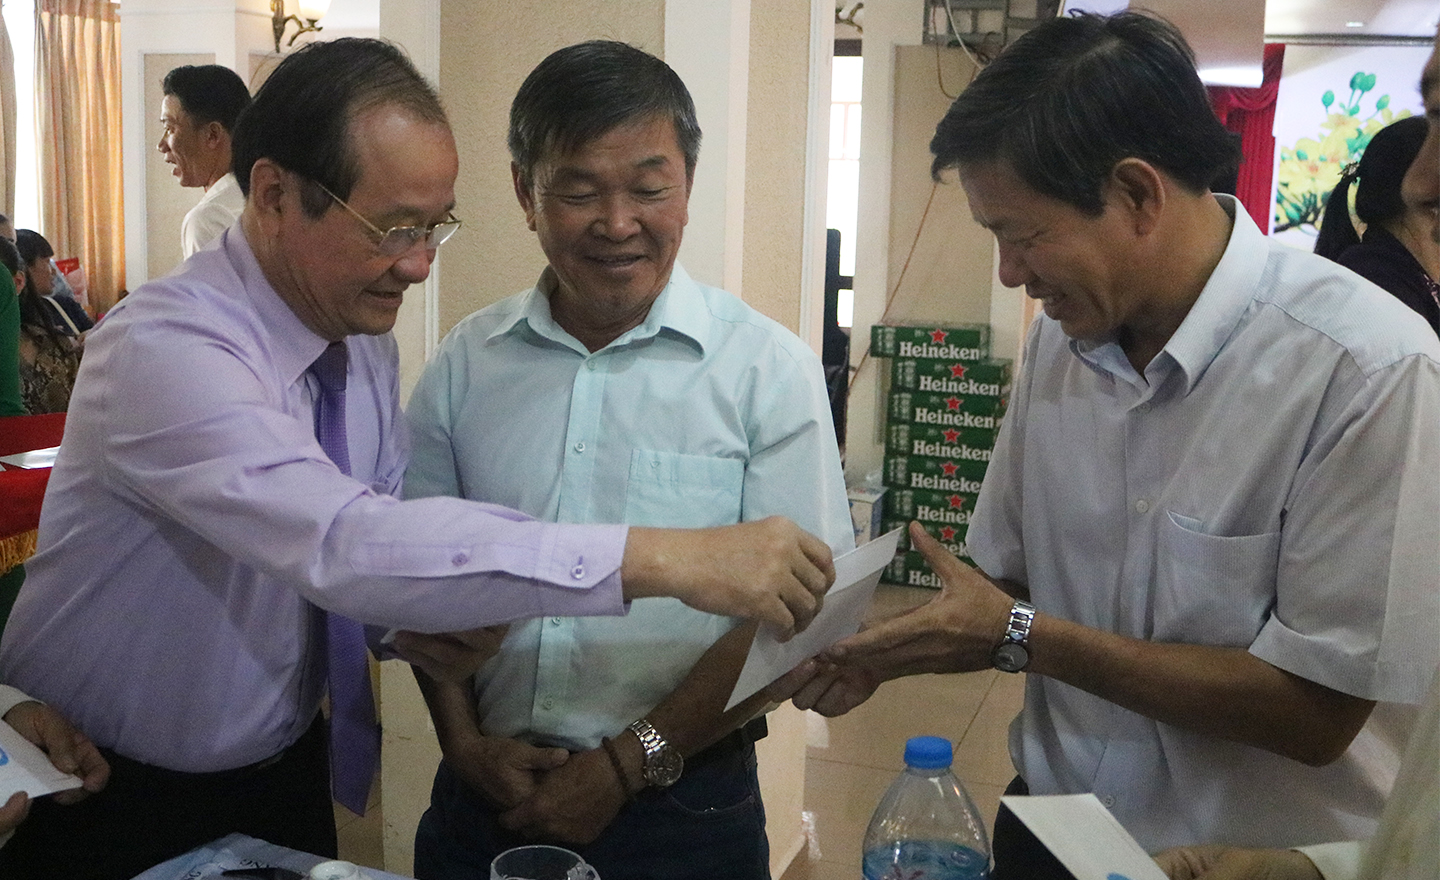 Đồng chí Lê Văn Hưởng (ảnh trên) và đồng chí Trần Thanh Đức (ảnh dưới) trao thiệp chúc mừng năm mới cho các đại biểu tham dự buổi họp mặt.